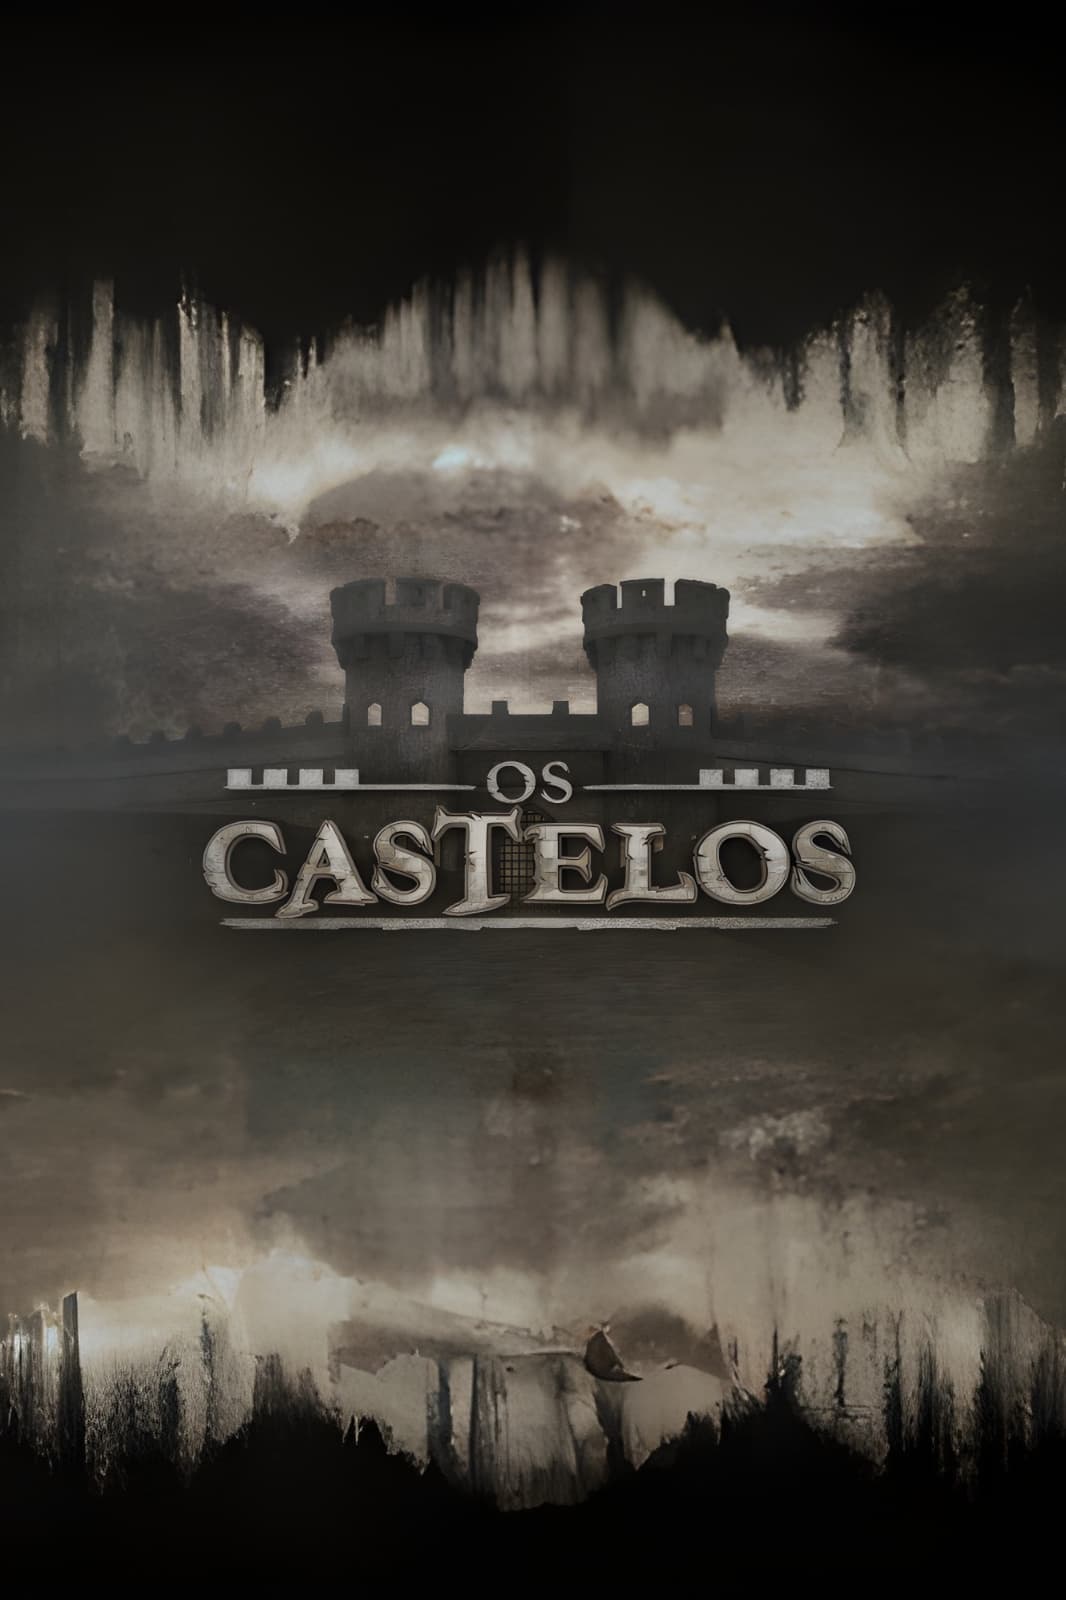 Os castelos